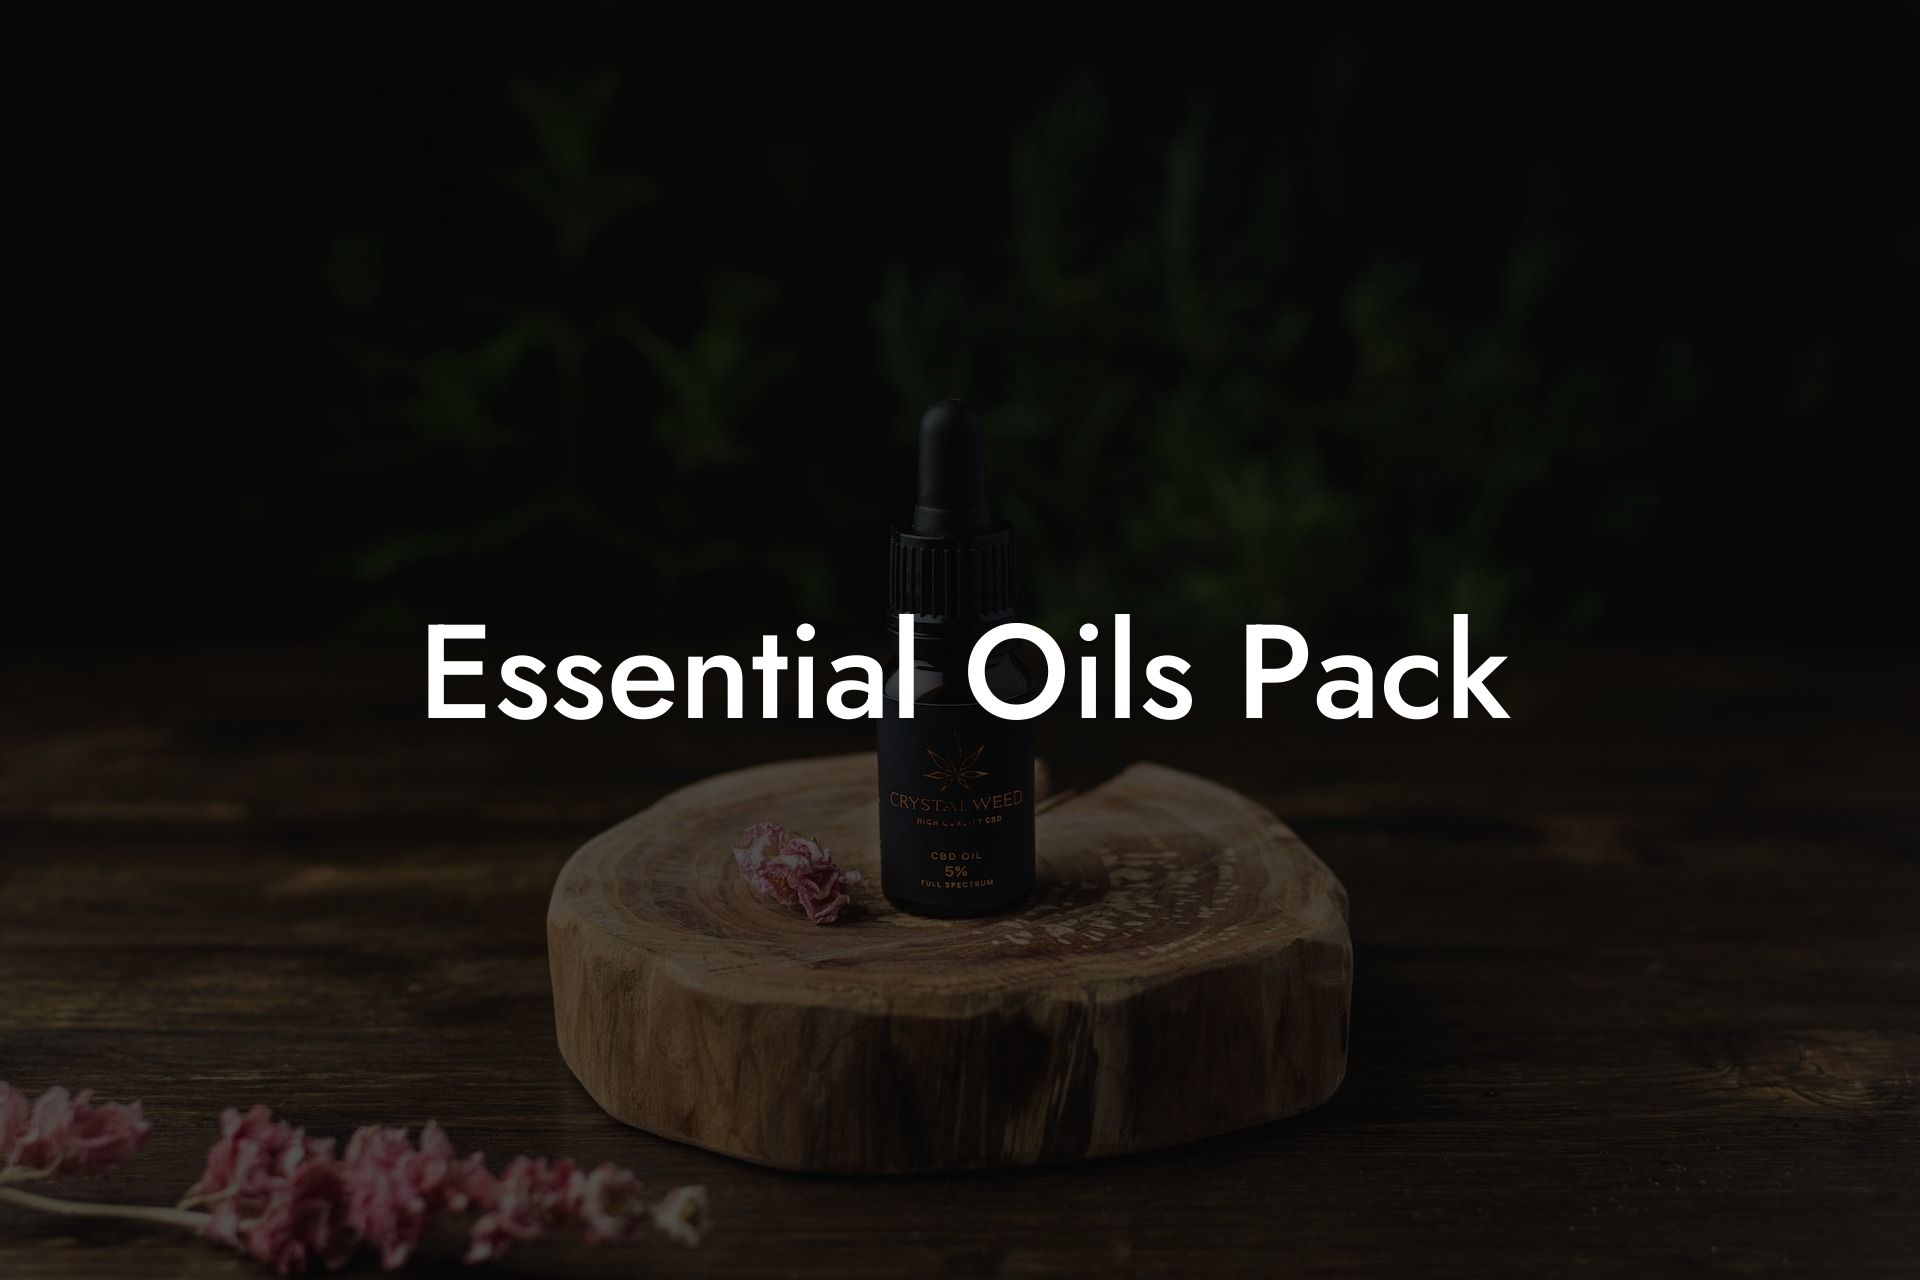 Essential Oils Pack